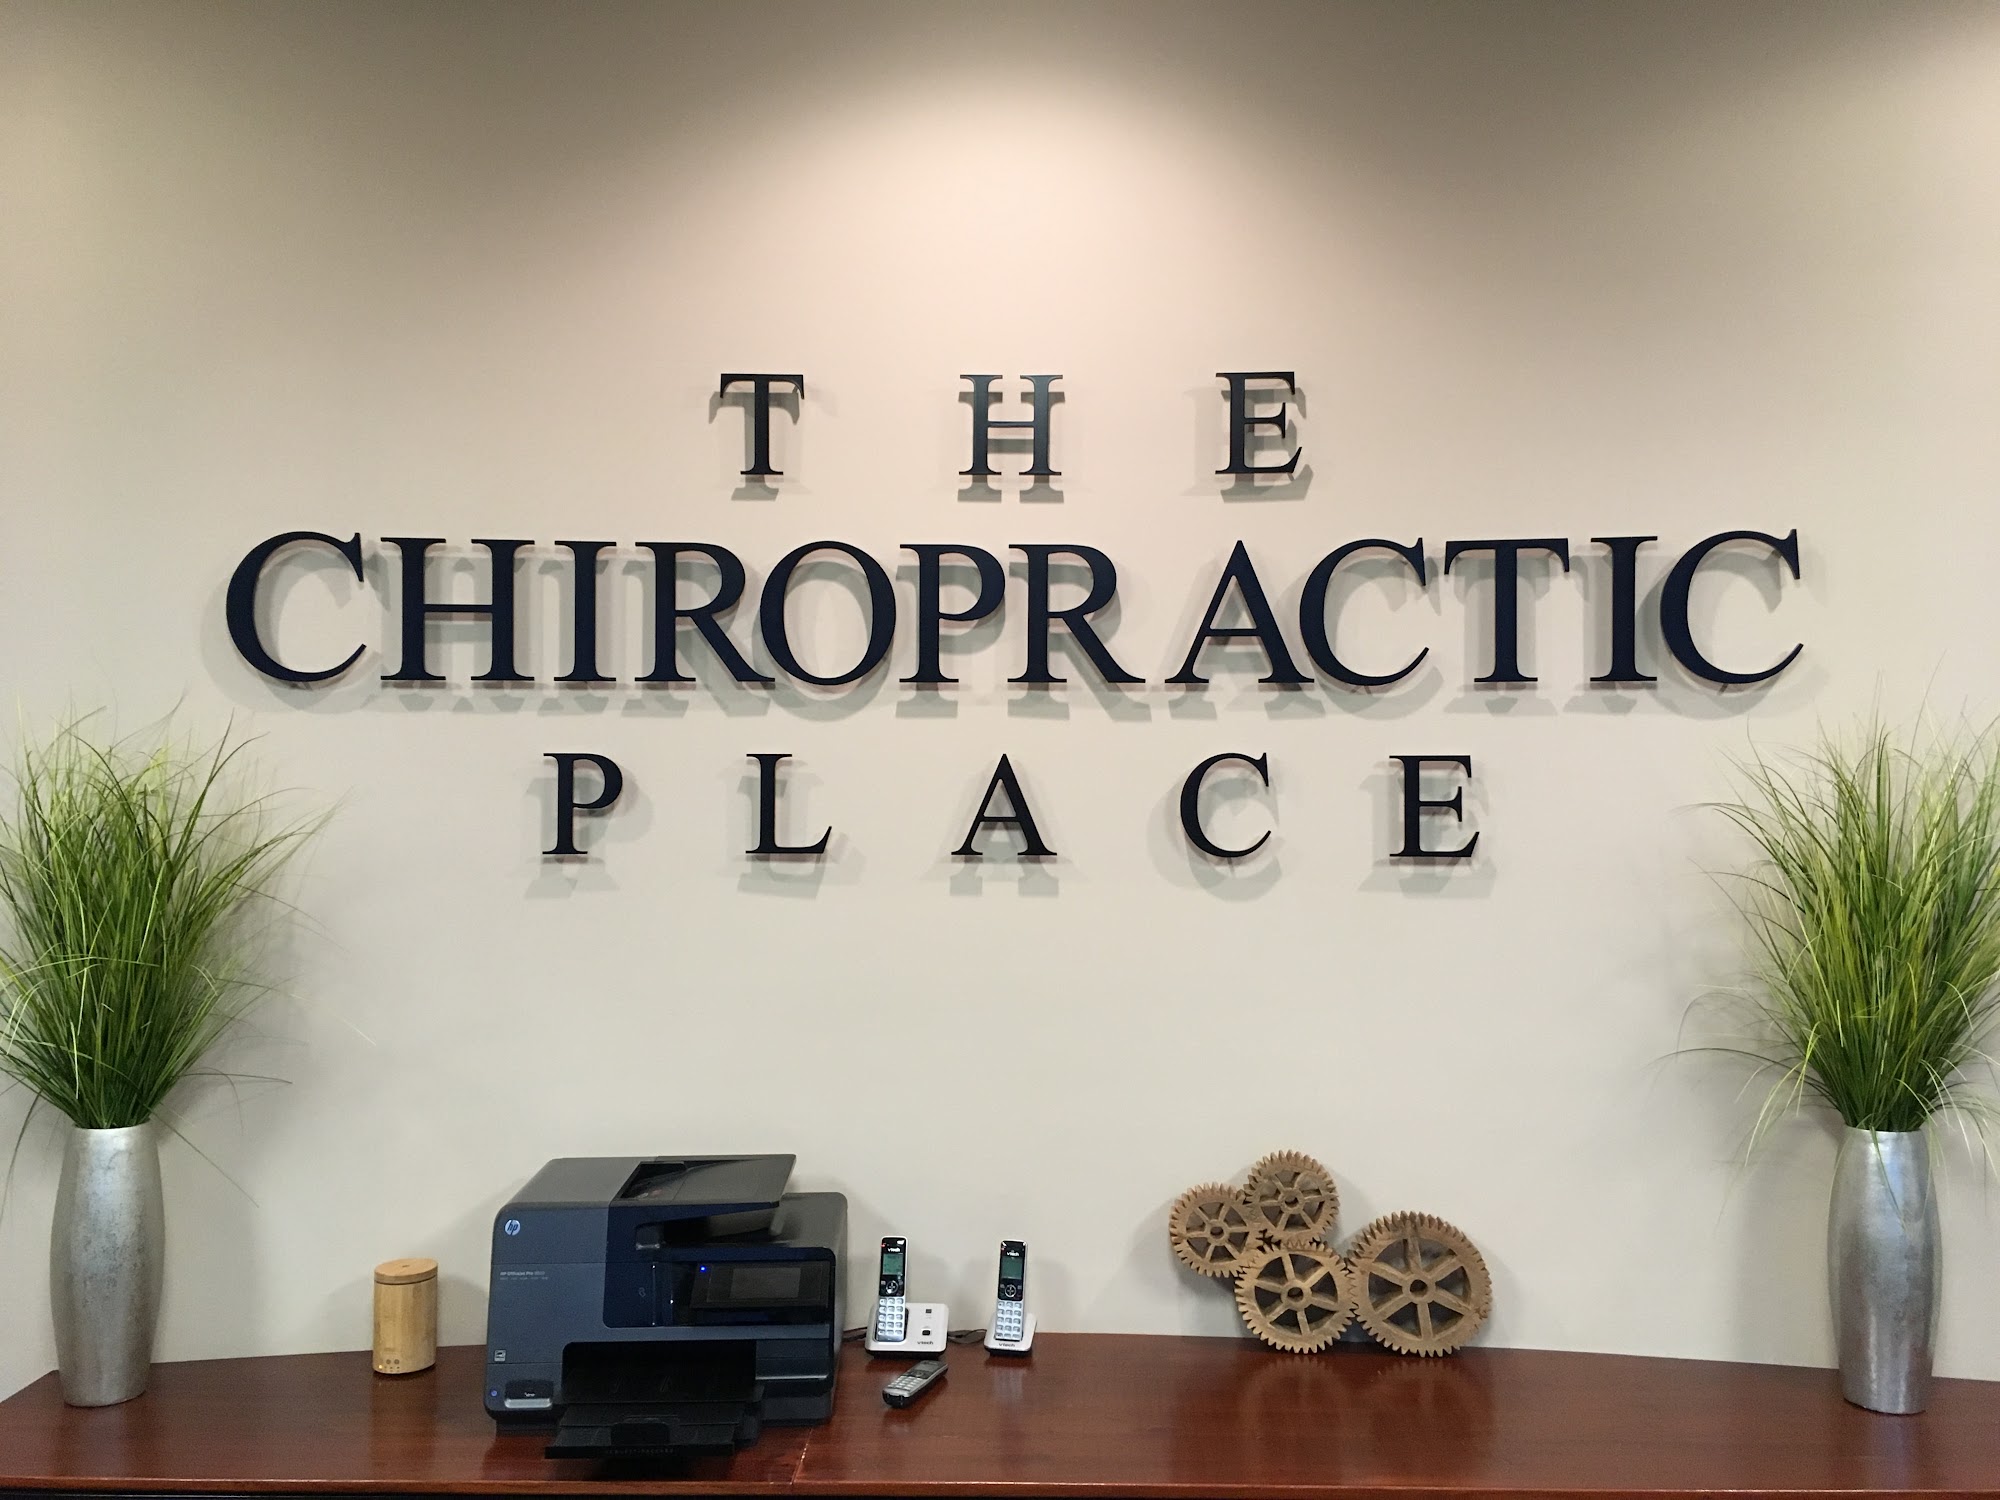 The Chiropractic Place 849 Ridge Rd, Minooka Illinois 60447